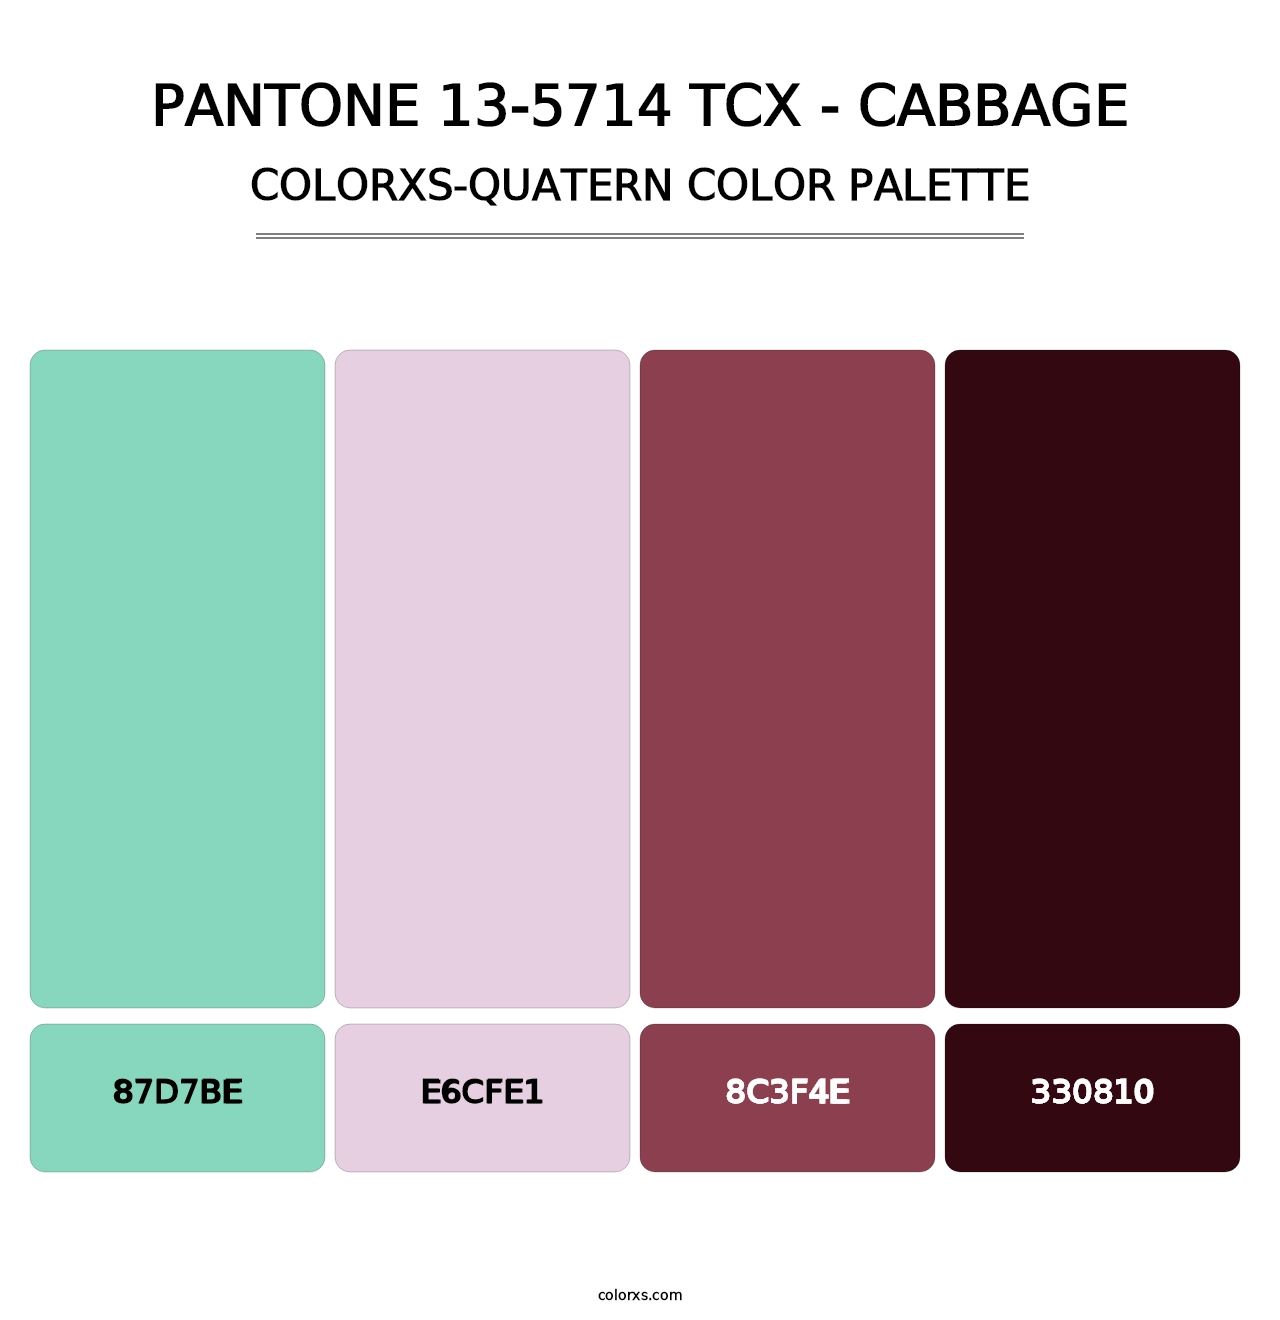 PANTONE 13-5714 TCX - Cabbage - Colorxs Quatern Palette